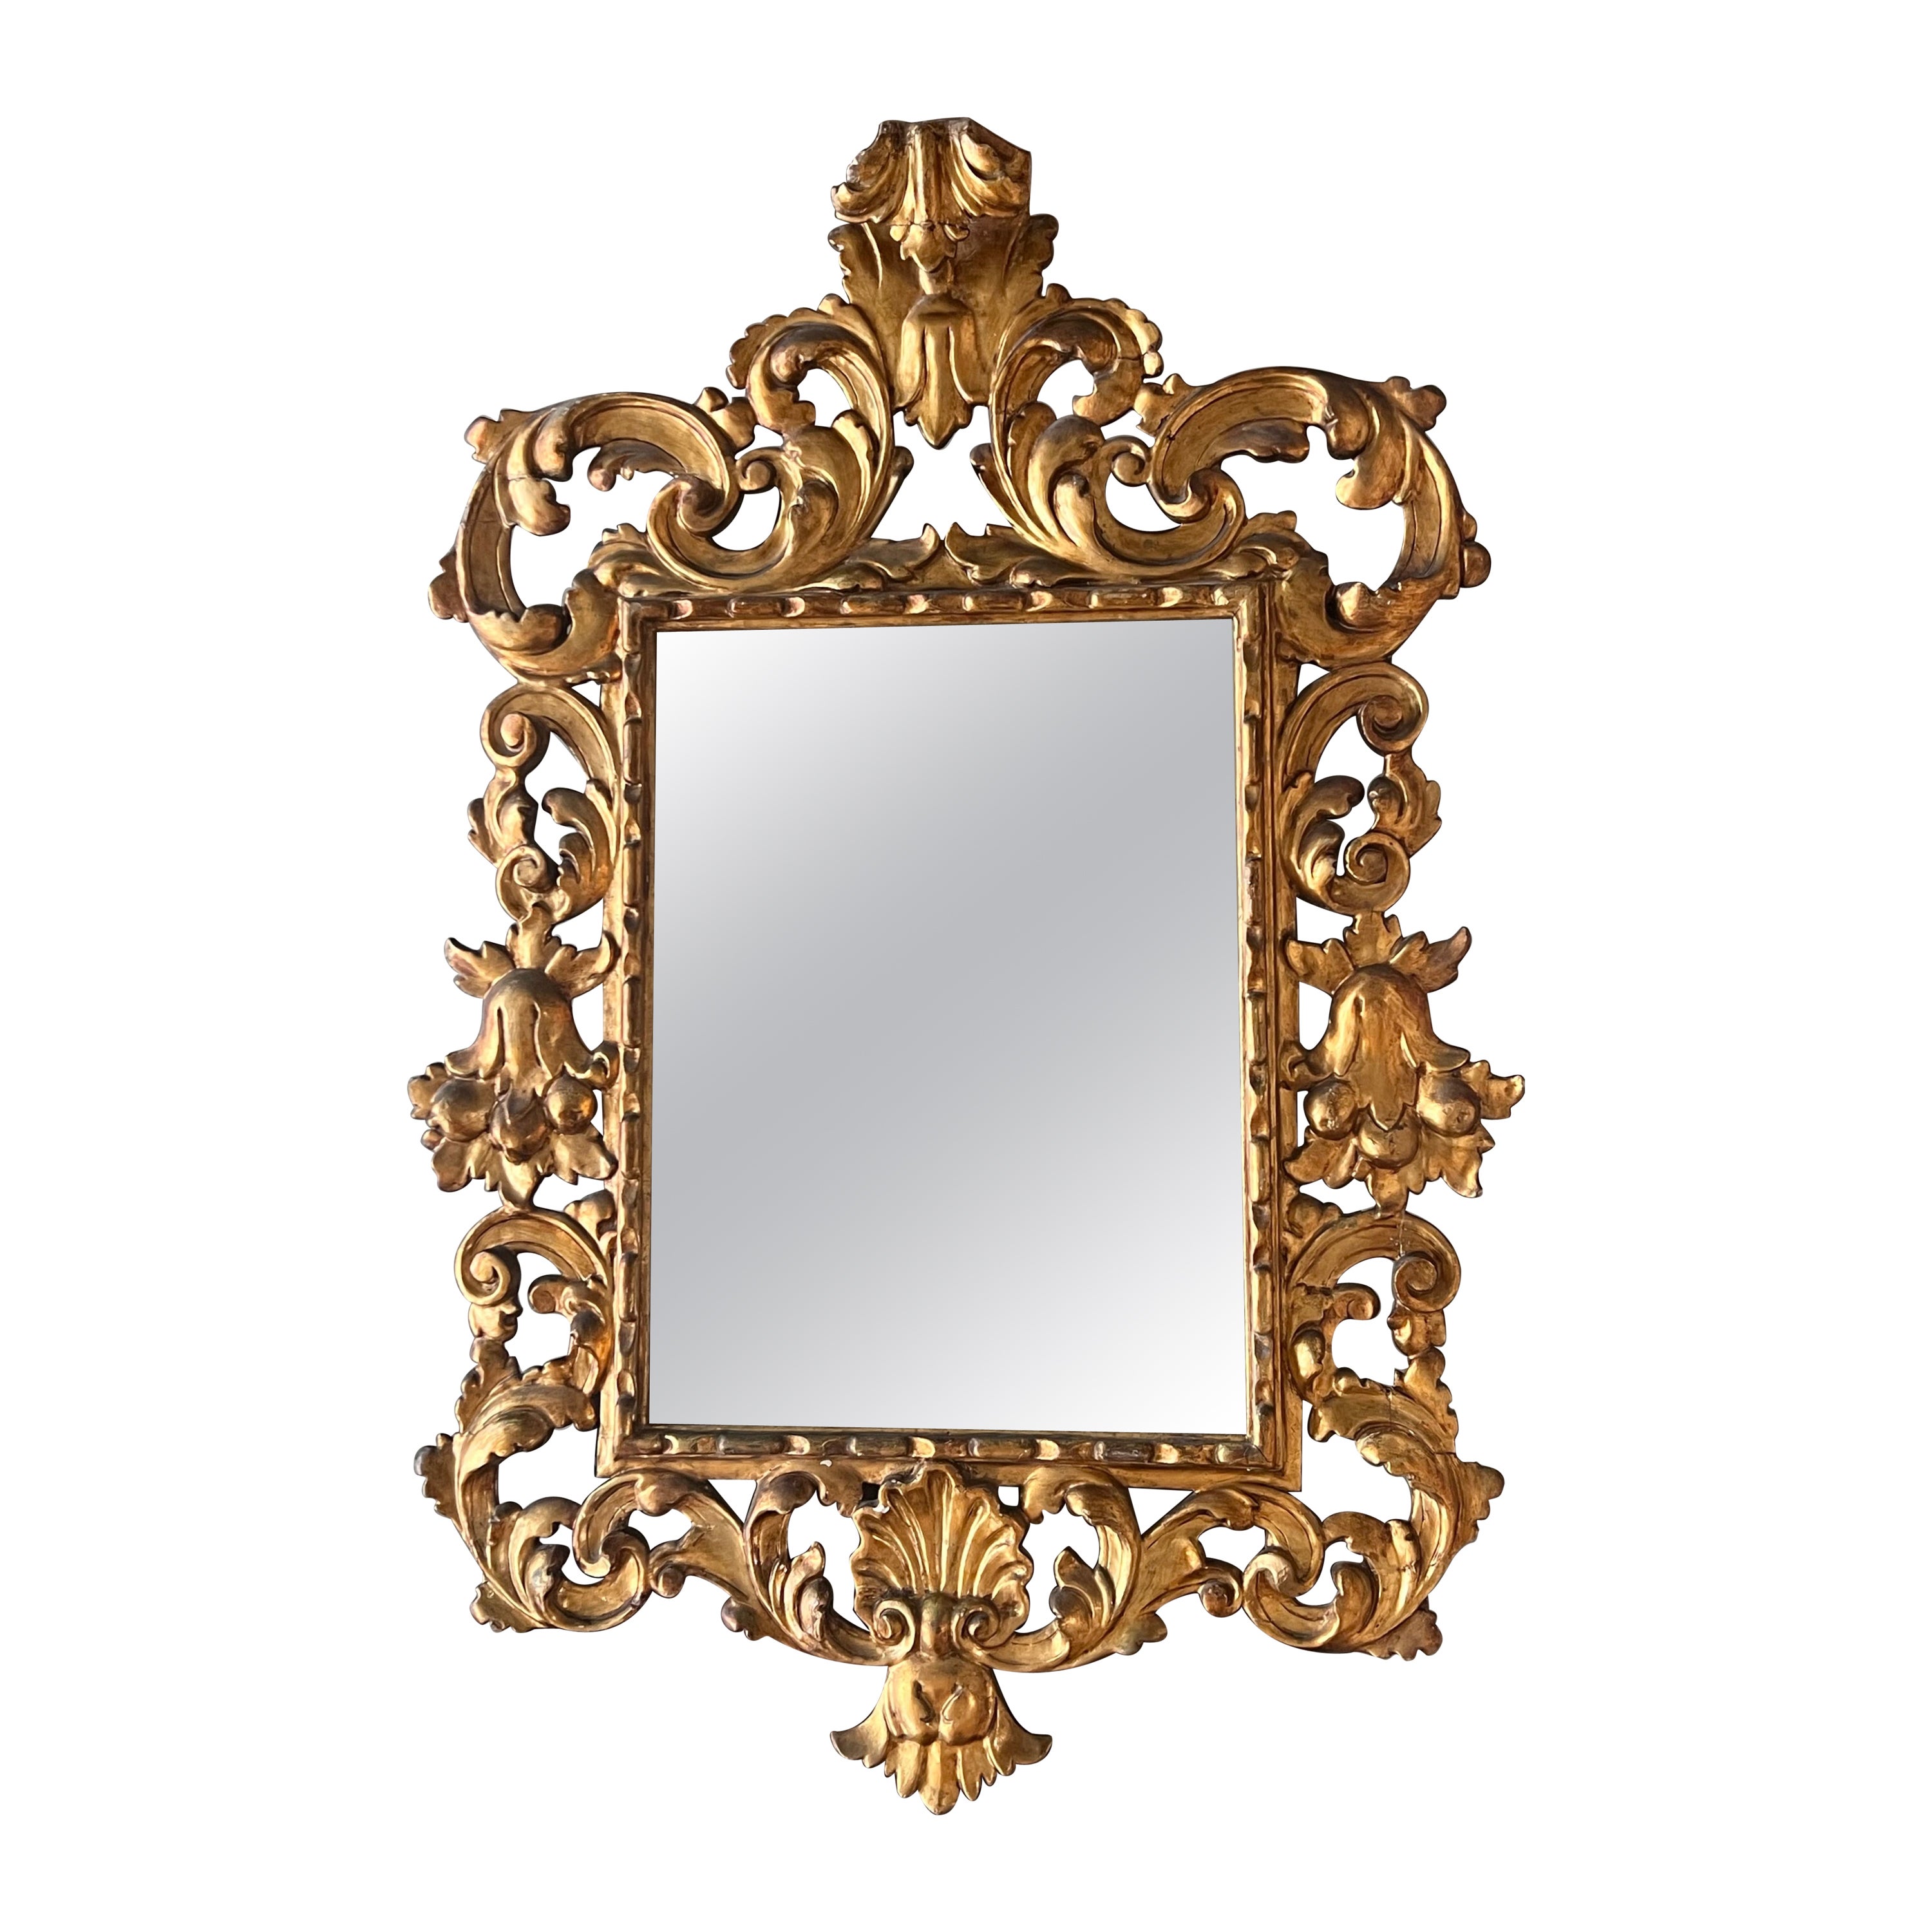 19. Französisch Empire Periode geschnitzt vergoldet Wood Mirror